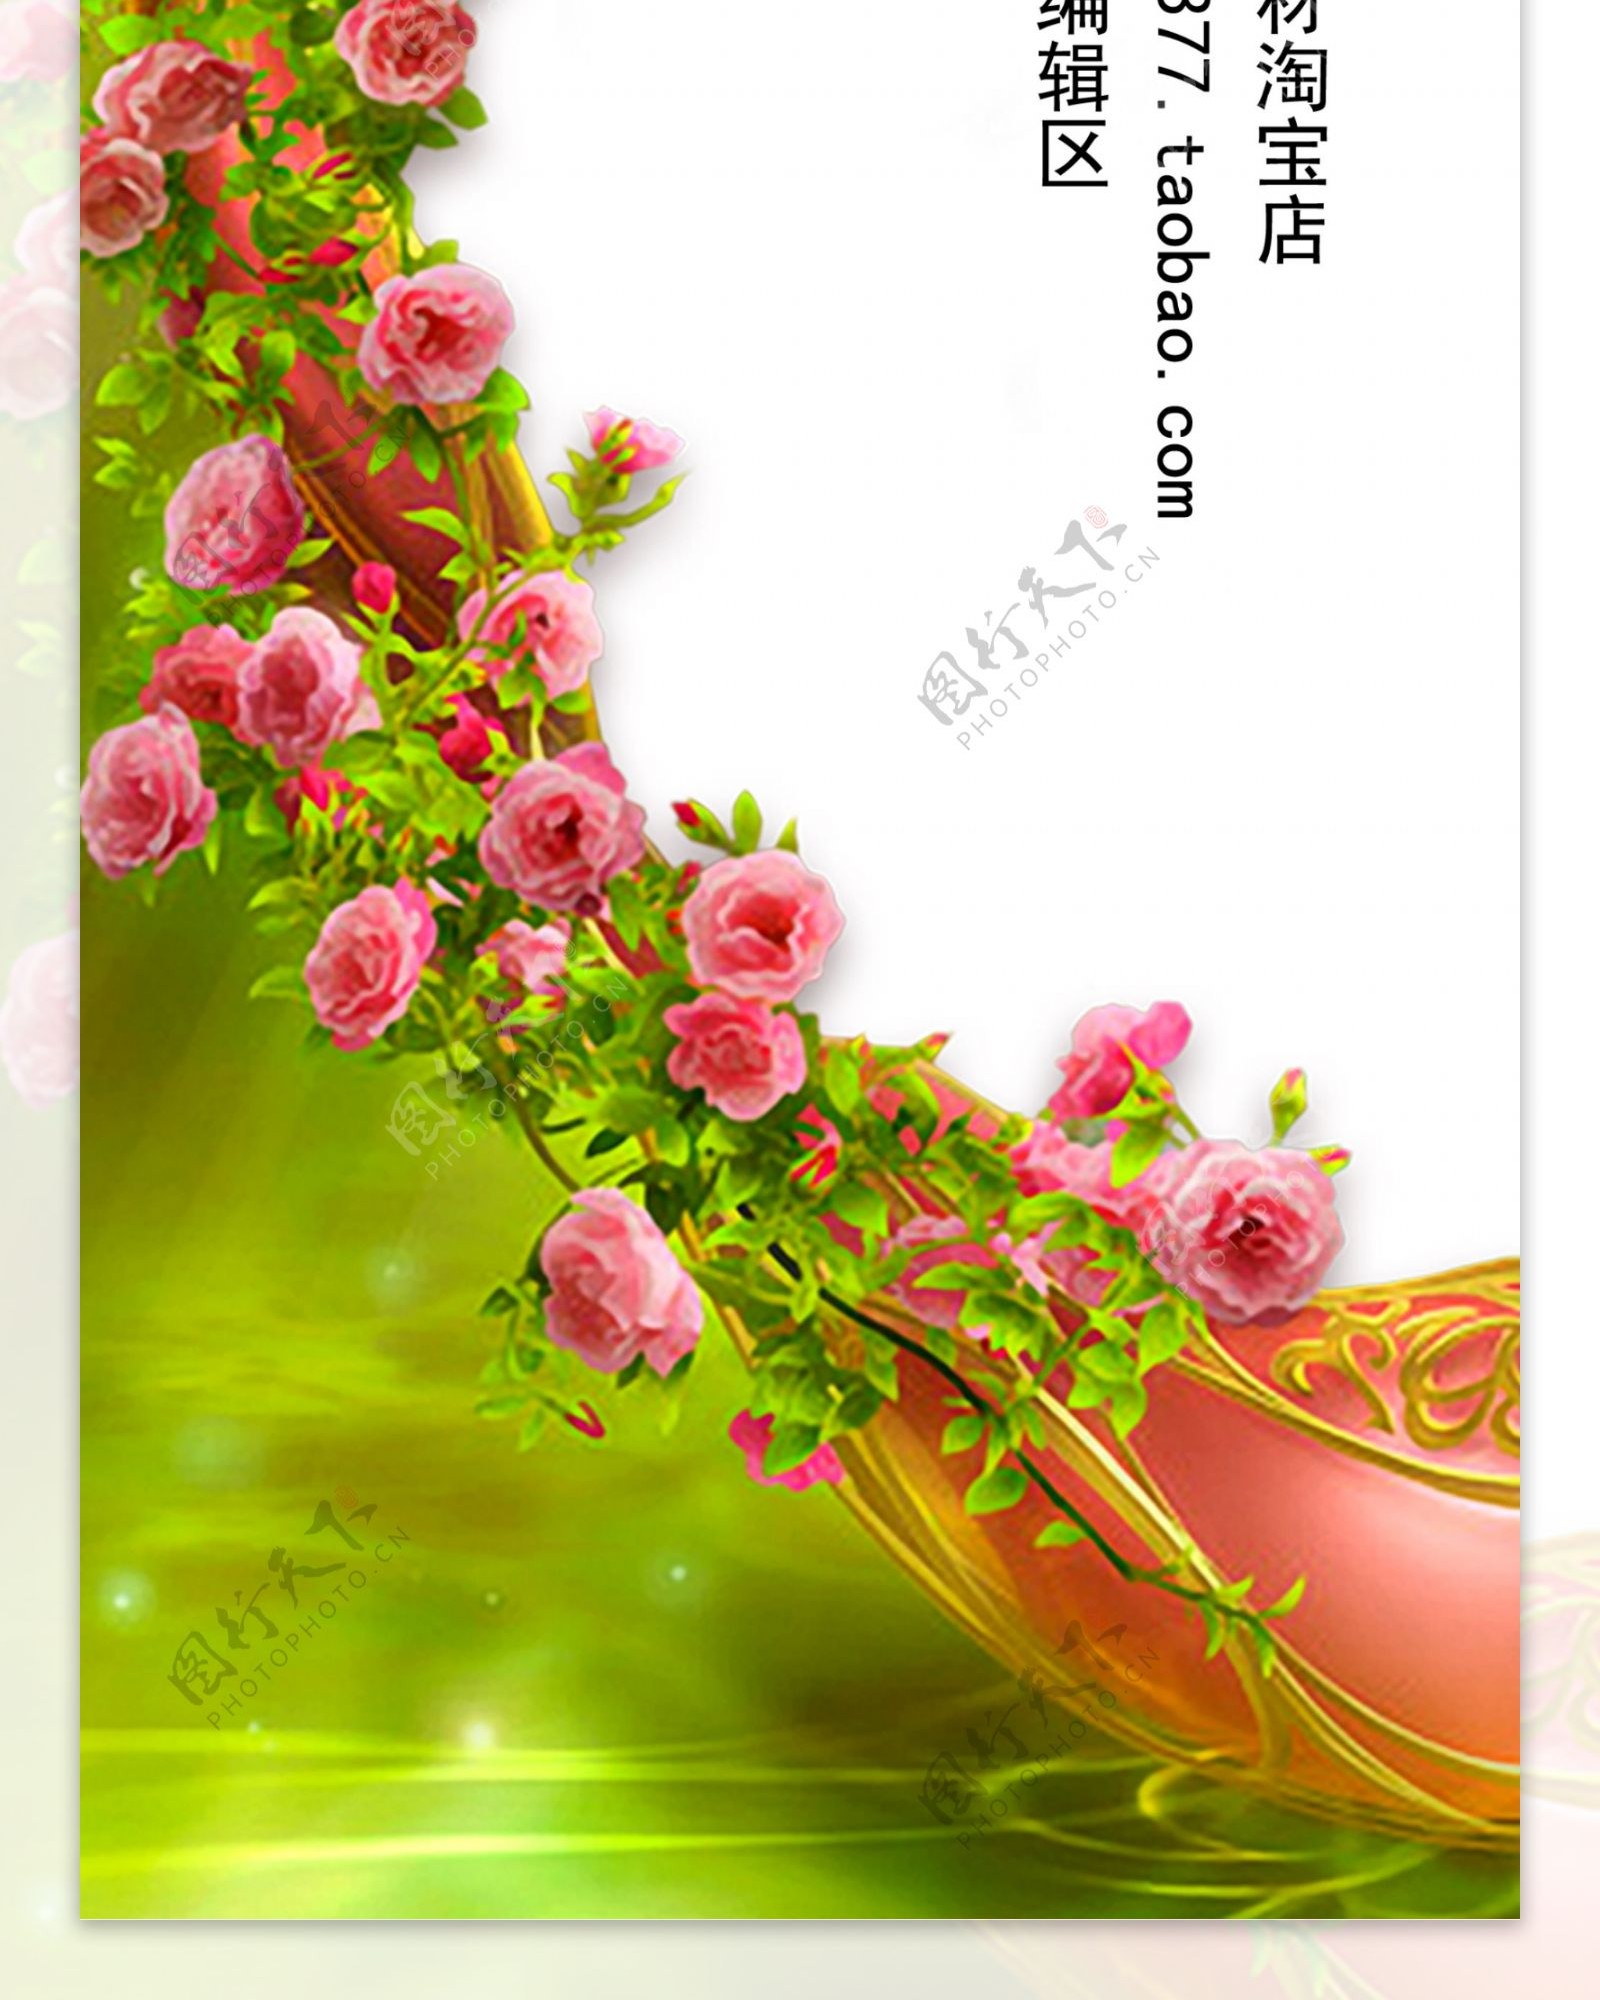 精美玫瑰花展架设计模板海报素材画面元素